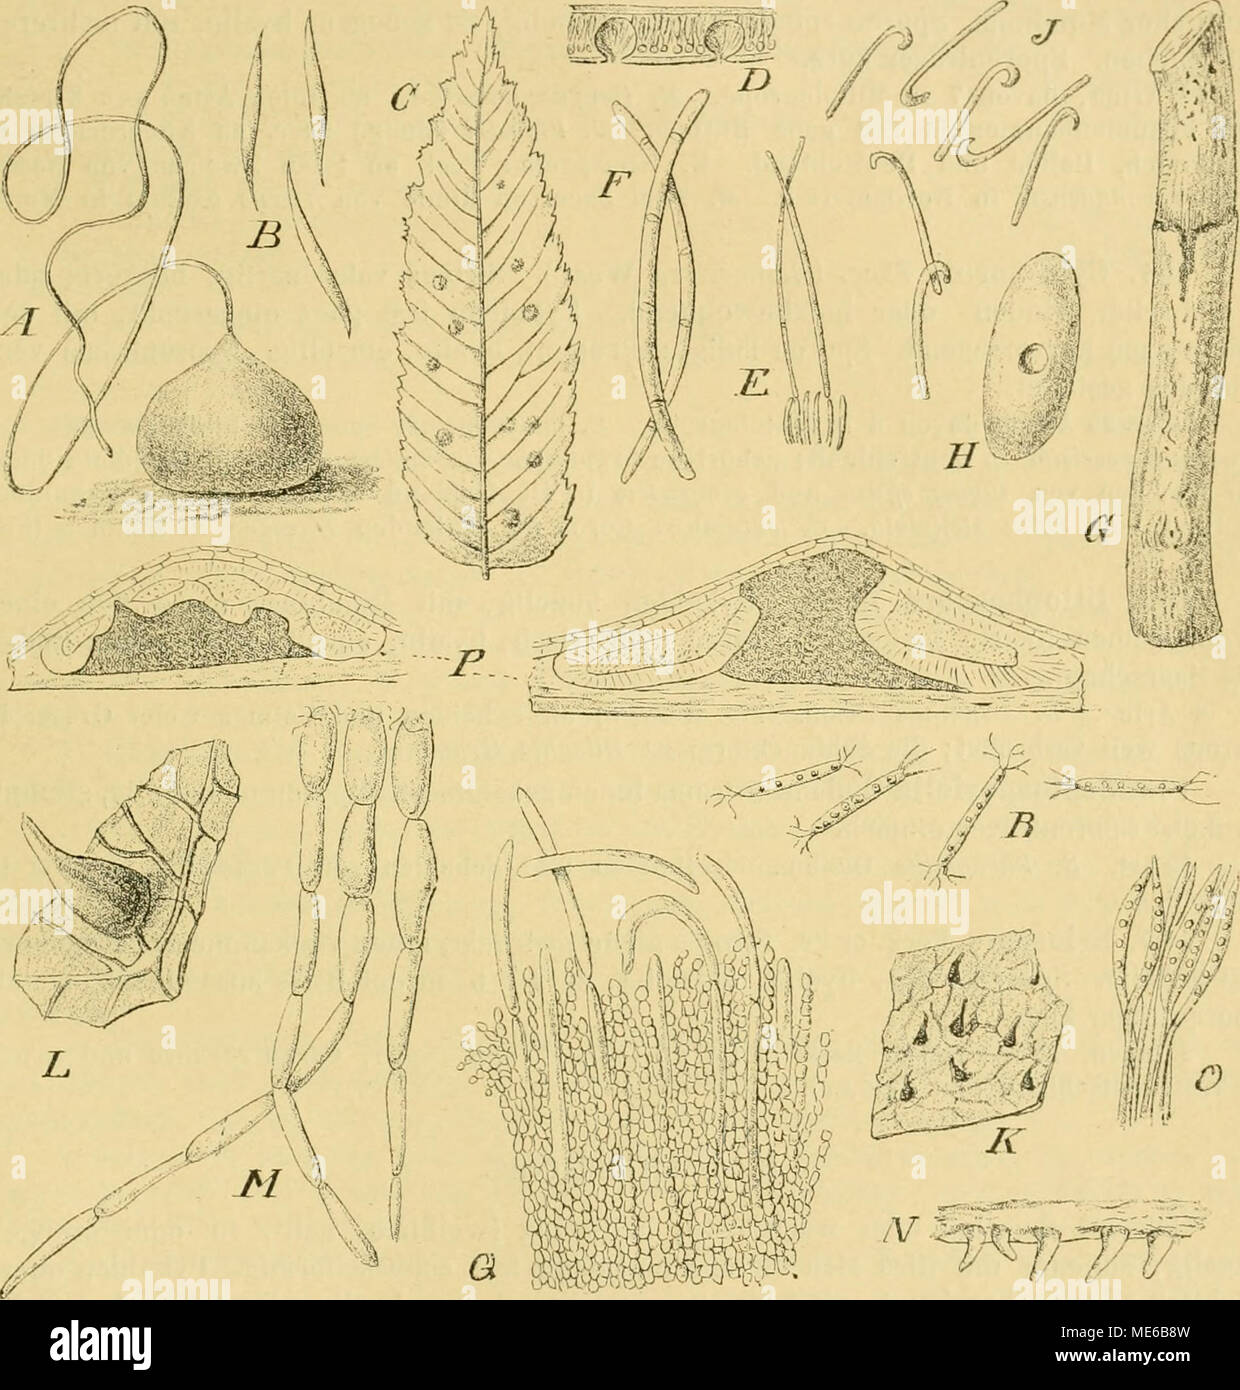 . Die Natürlichen Pflanzenfamilien nebst ihren Gattungen und wichtigeren Arten, insbesondere den Nutzpflanzen, unter Mitwirkung zahlreicher hervorragender Fachgelehrten begründet . big. 2(J0. A—B CoUoneiiia papillatum Grove. A Pyknide 150/1. B Sporen 1000/1. C—F l'lilcosjjoiu dotichospora Sacc. 6'Habitus des Pilzes, nat. ür. D Pykniden im Querschnitt, schwach vergr. A' Sporenträger mit Sporen, stark vergr. i^ Sporen, stark vergr. 6—JPhlyctaenaPseudopliomaSa.cc. ff Habitus des Pilzes, nat. Or. //Pyknide von oben gesehen, vergr. J Sporen, stark vergr. K—M Cornularia pyramidalis (Schwein.) Starb. Stock Photo